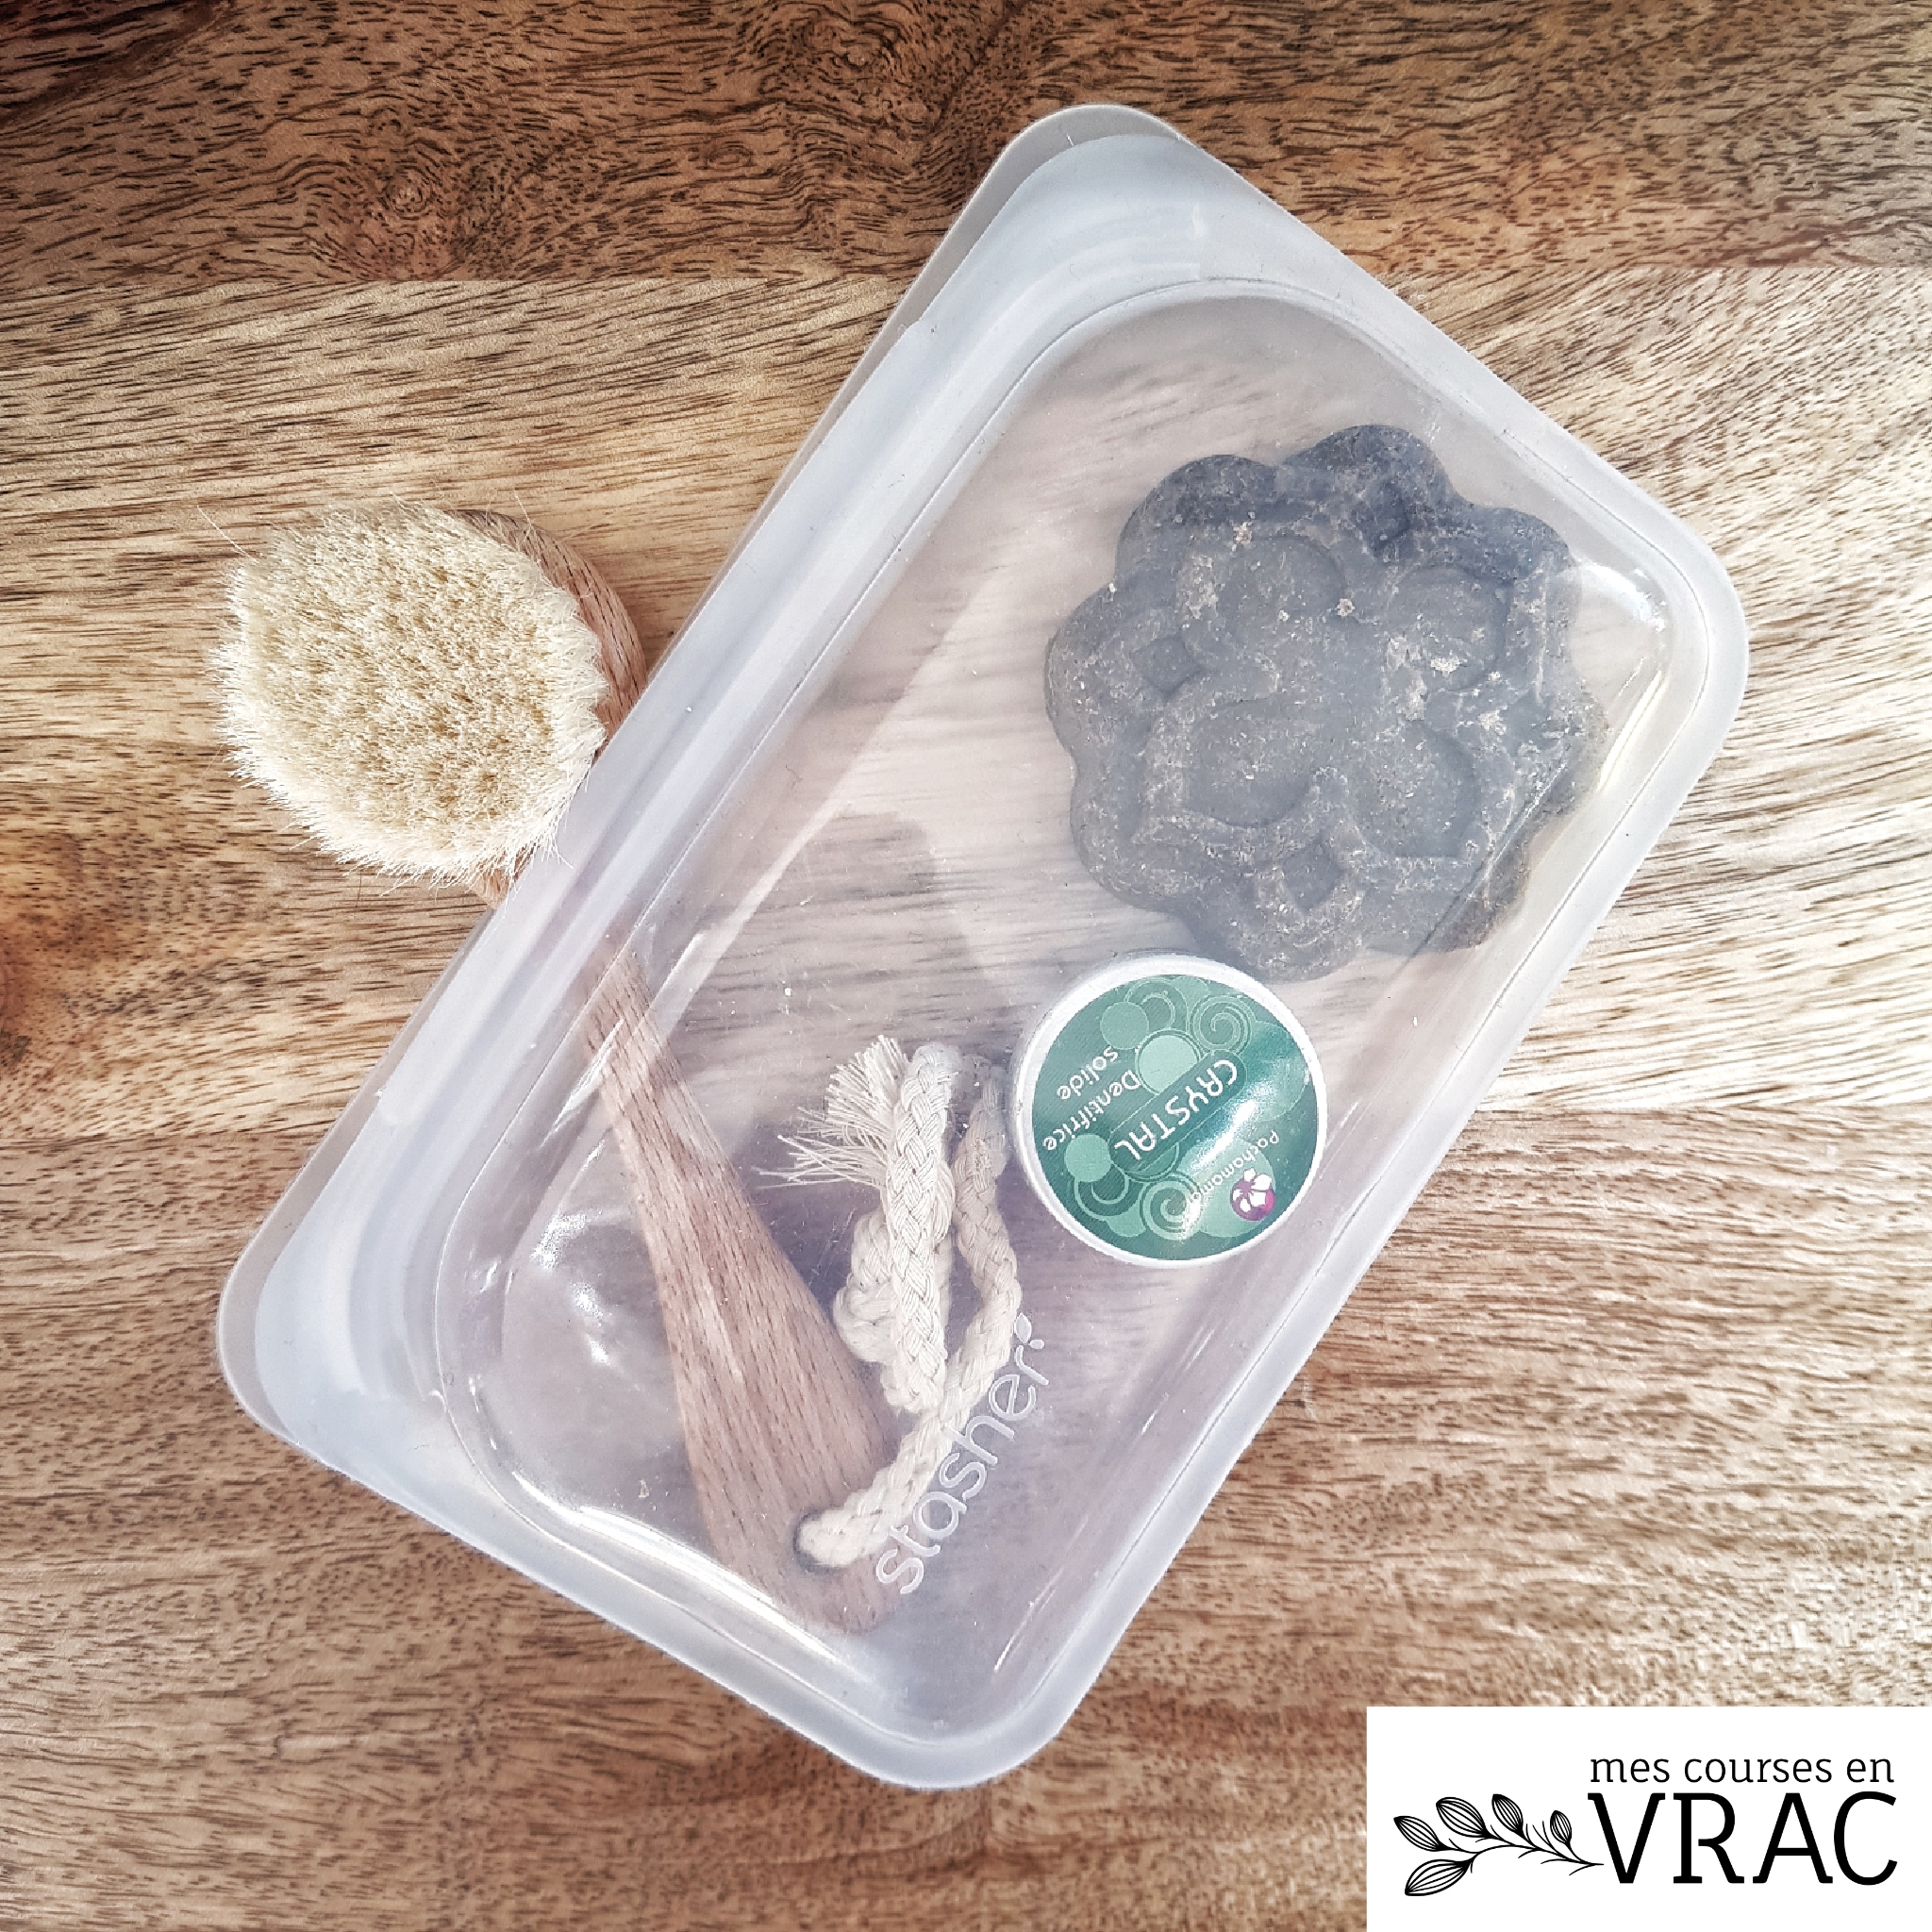 Sac de Conservation Réutilisable - Emballage - Gadgets de Cuisine